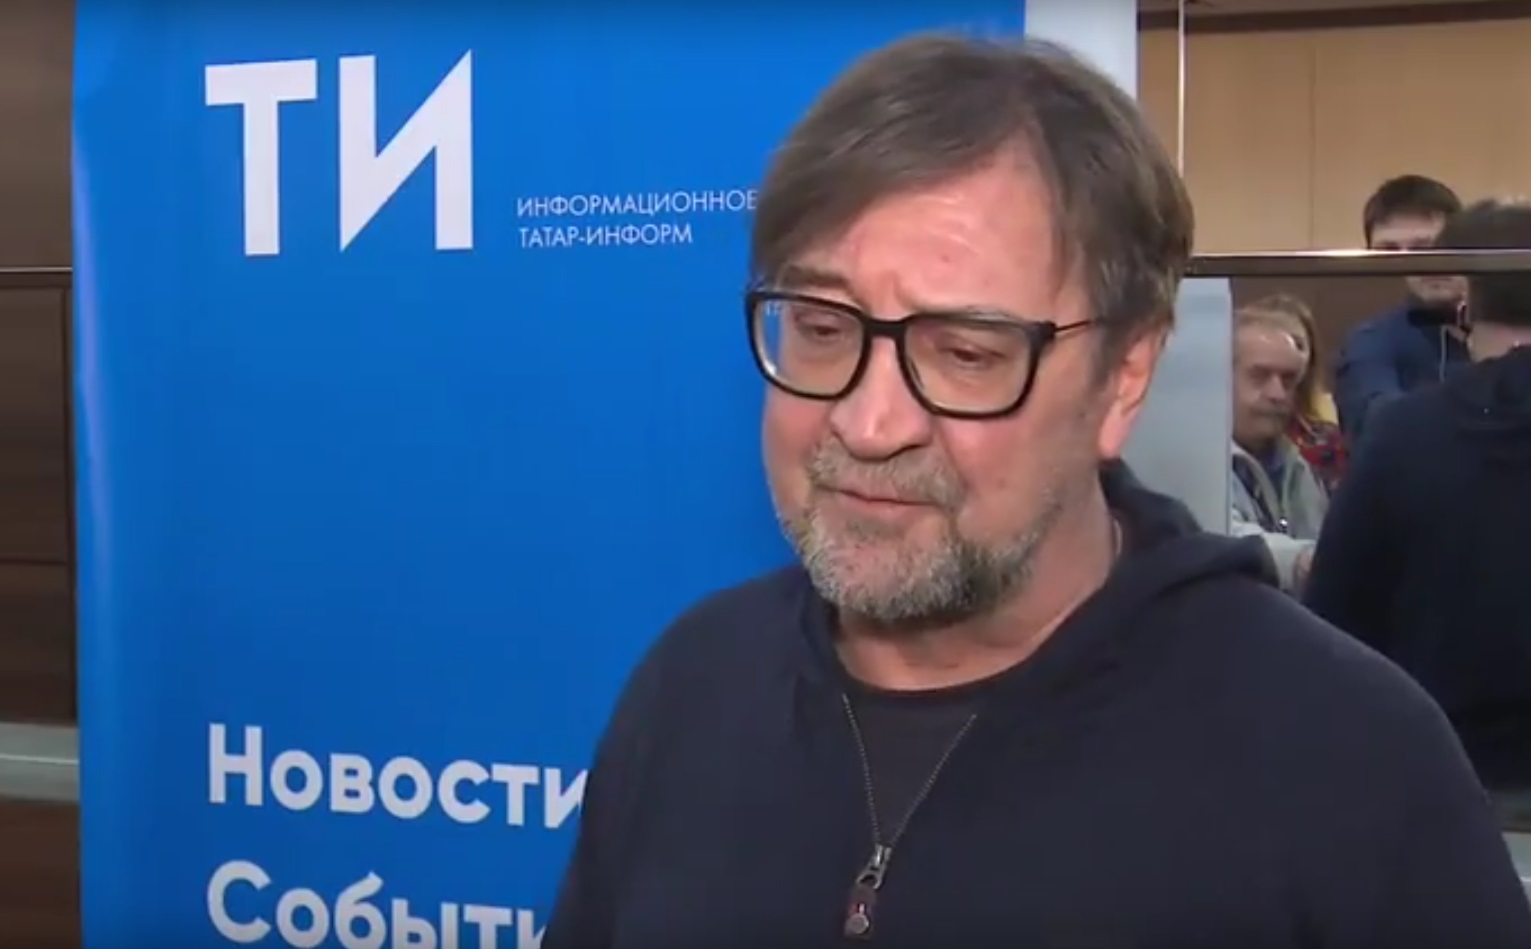 Рок-музыкант Юрий Шевчук призвал татарстанцев хранить национальные языки